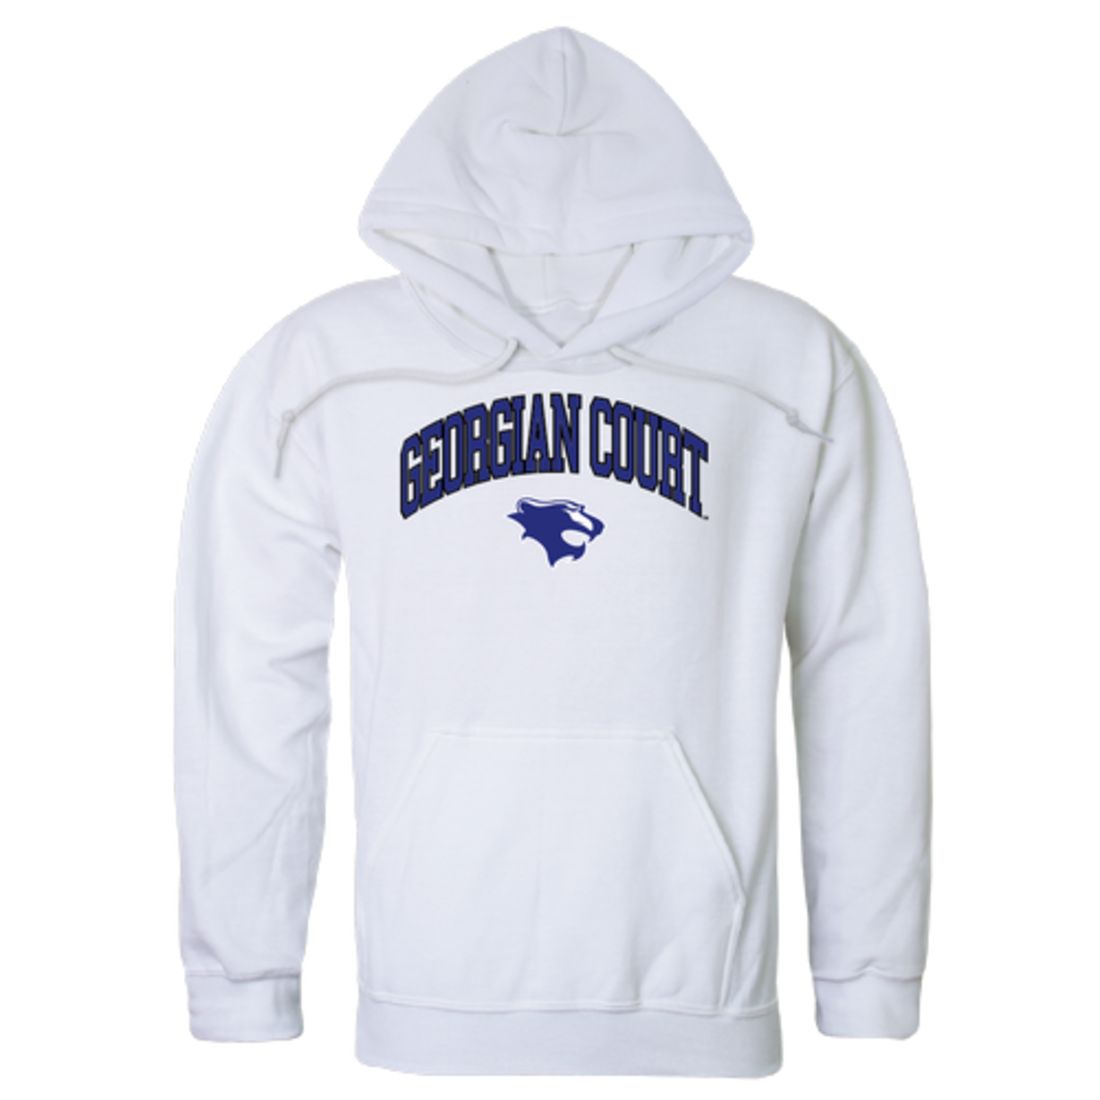 Georgian-Court-University-Lions-Campus-Fleece-Hoodie-Sweatshirts